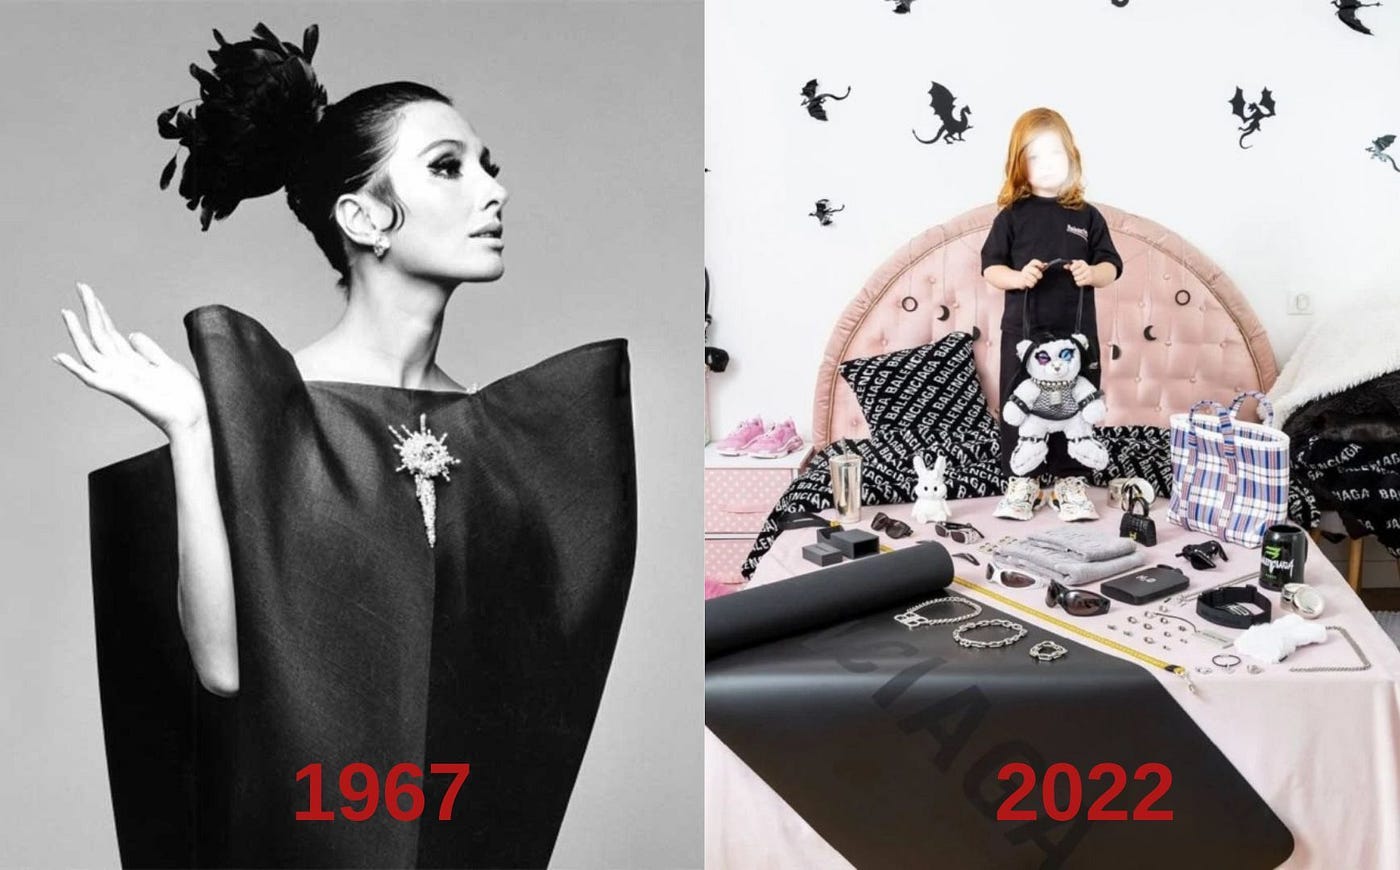 Luxury fashion house Balenciaga are mocked for their strange